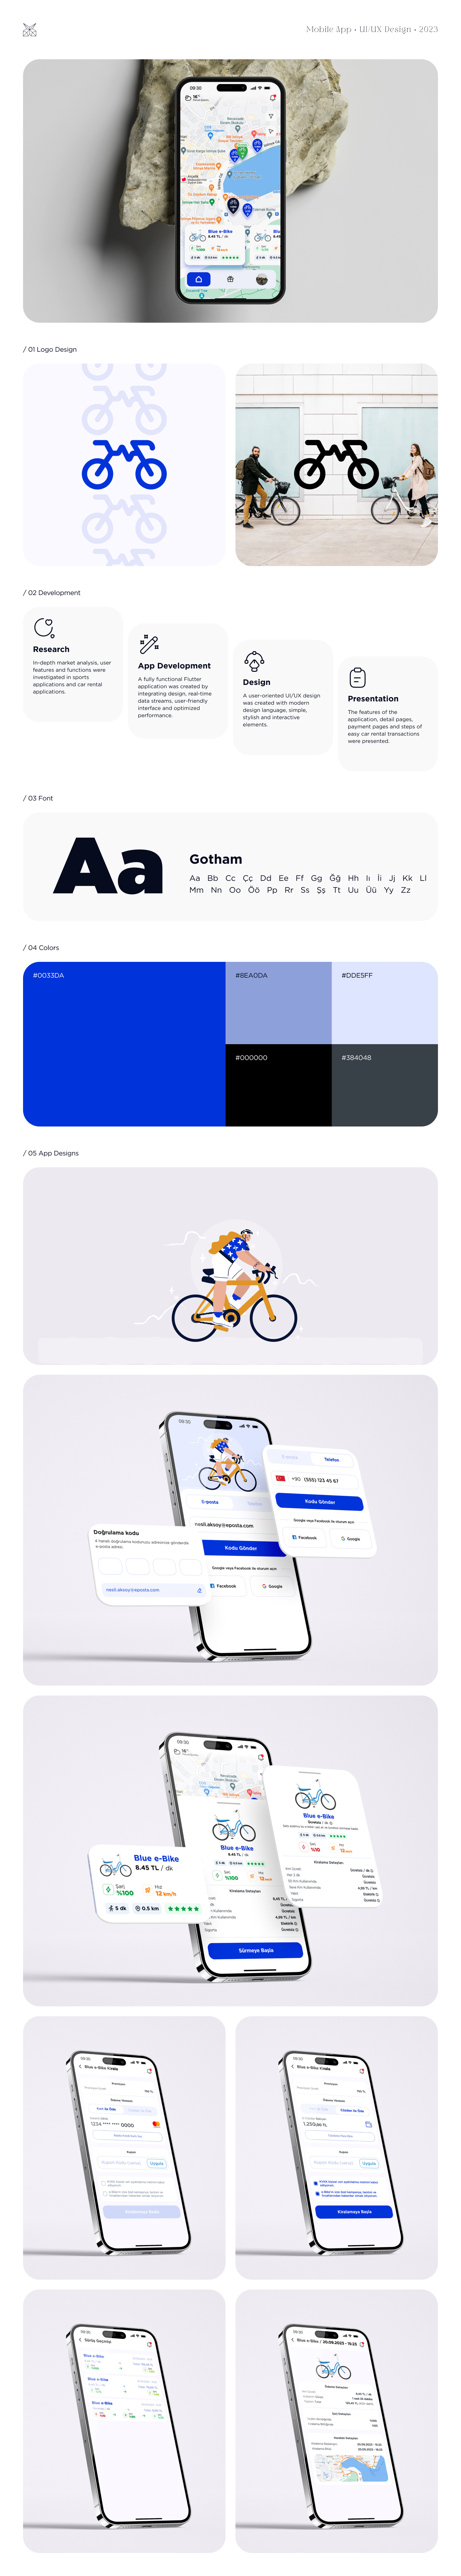 Mobile app mobile design mobile app design app design design UX design ui design Ebike Bike sport